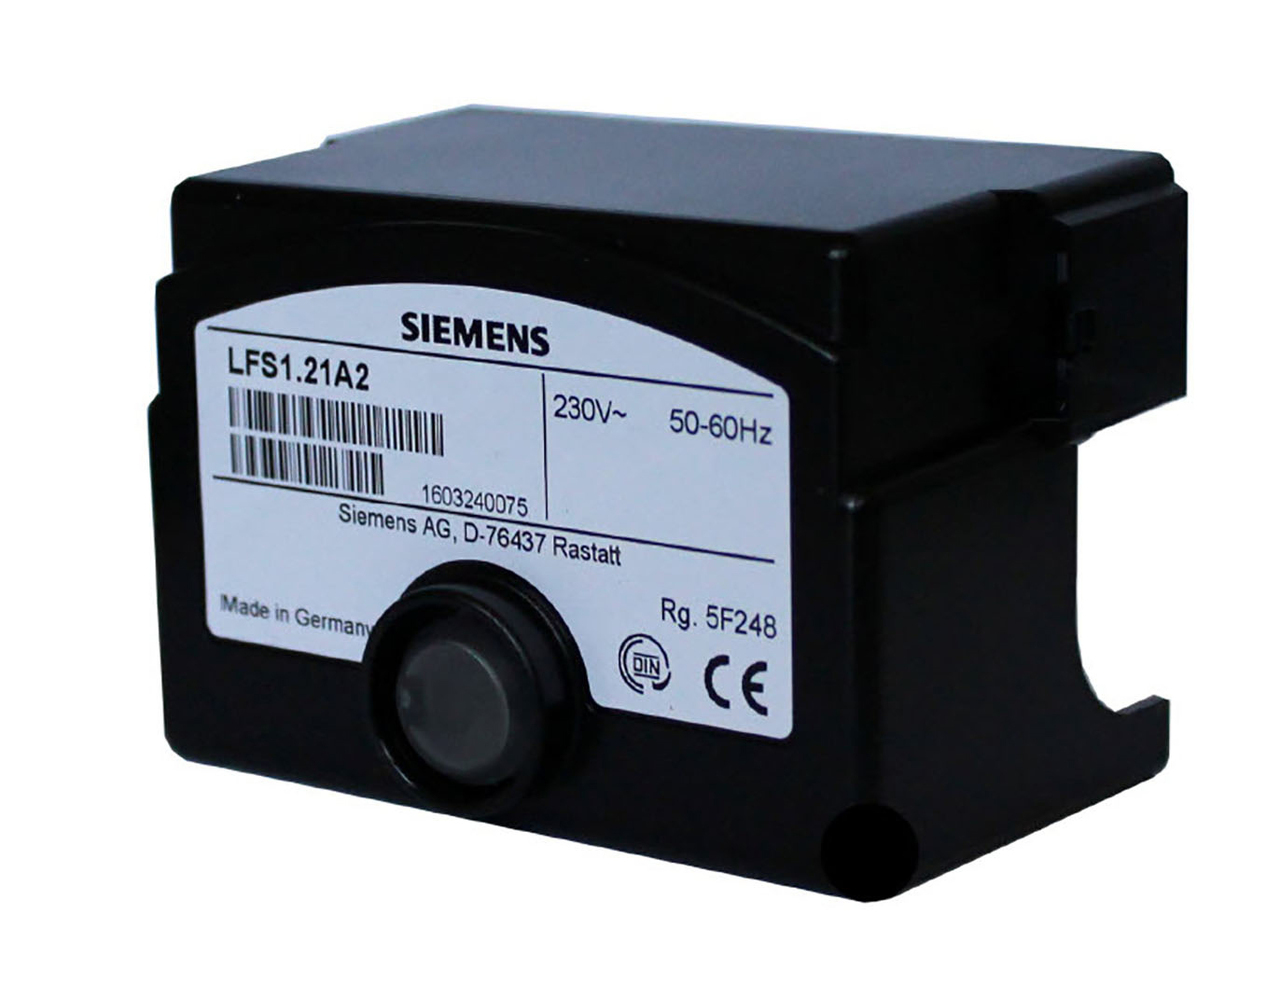 LFS1.21A2 / LFS1.21A1 Siemens Controller